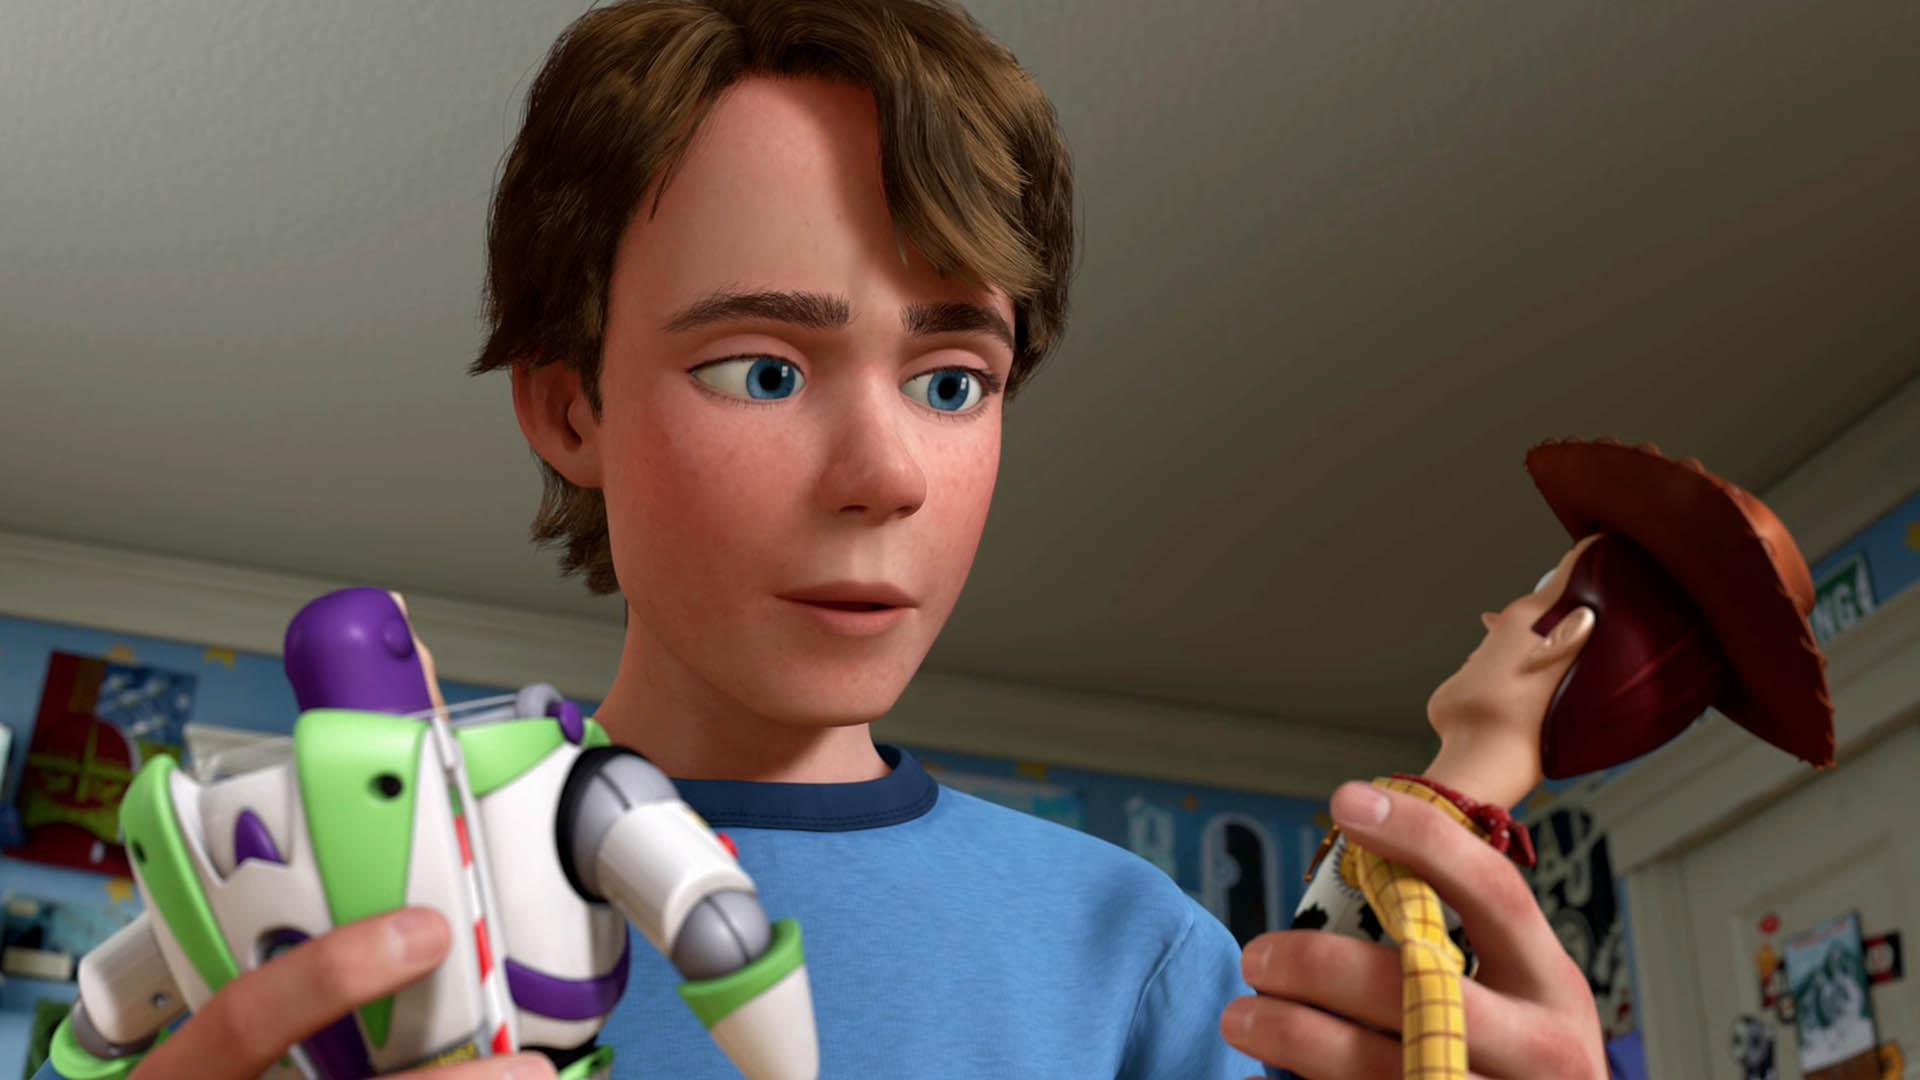 باز لایت یر و وودی در دستان شخصیت اندی در انیمیشن Toy Story